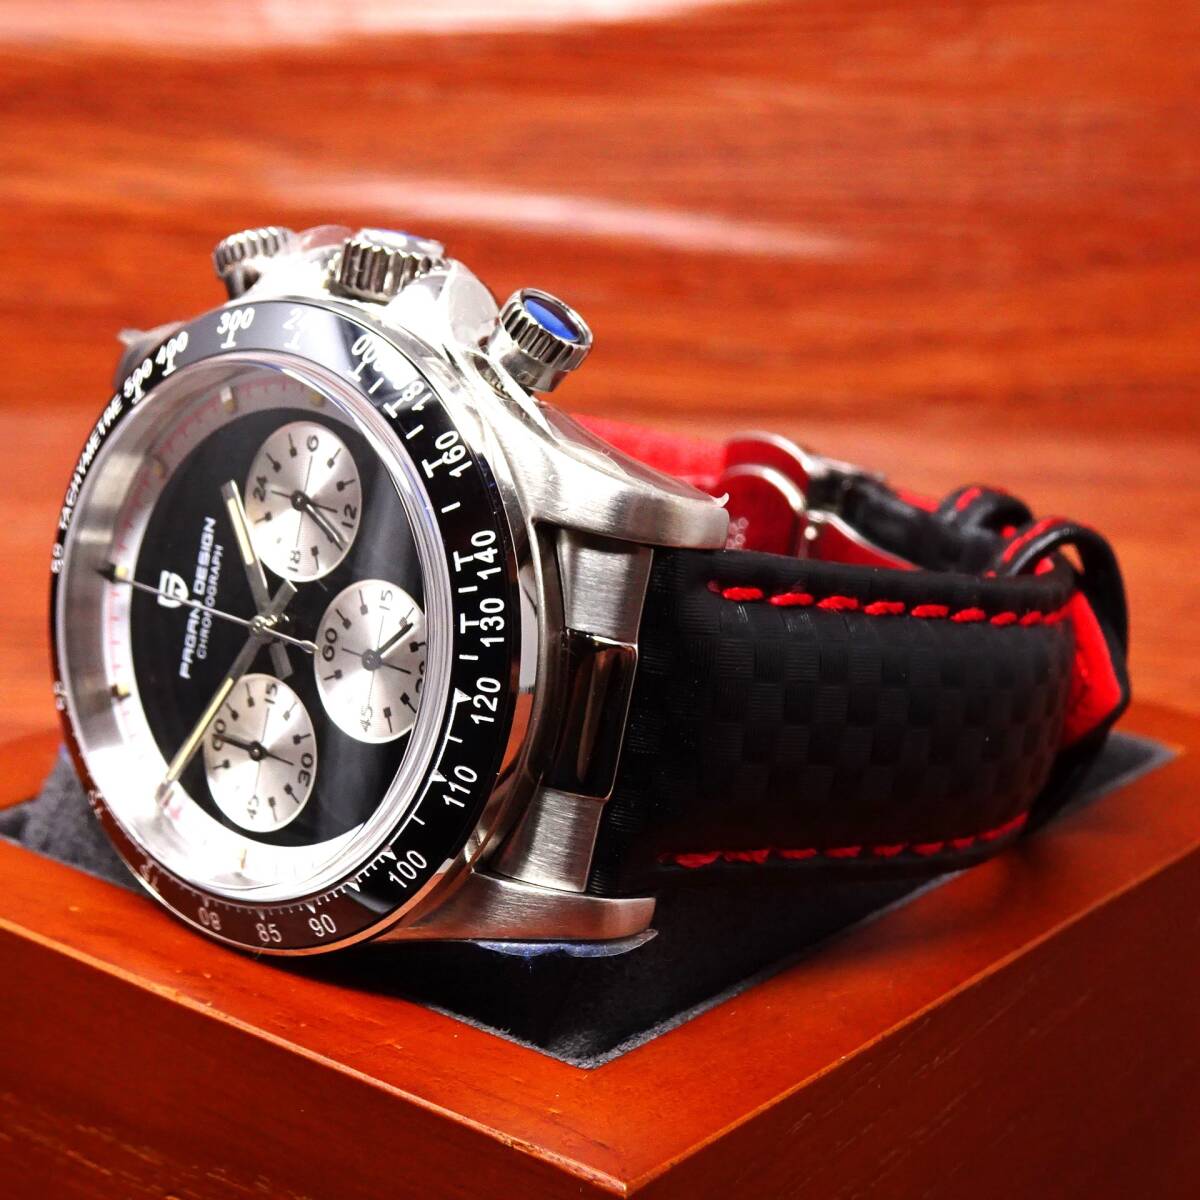 送料無料・新品・パガーニデザイン・メンズ・セイコー製VK63クロノグラフクオーツ式腕時計・オマージュ・カーボン柄本革モデル・PD-1676・Bの画像2